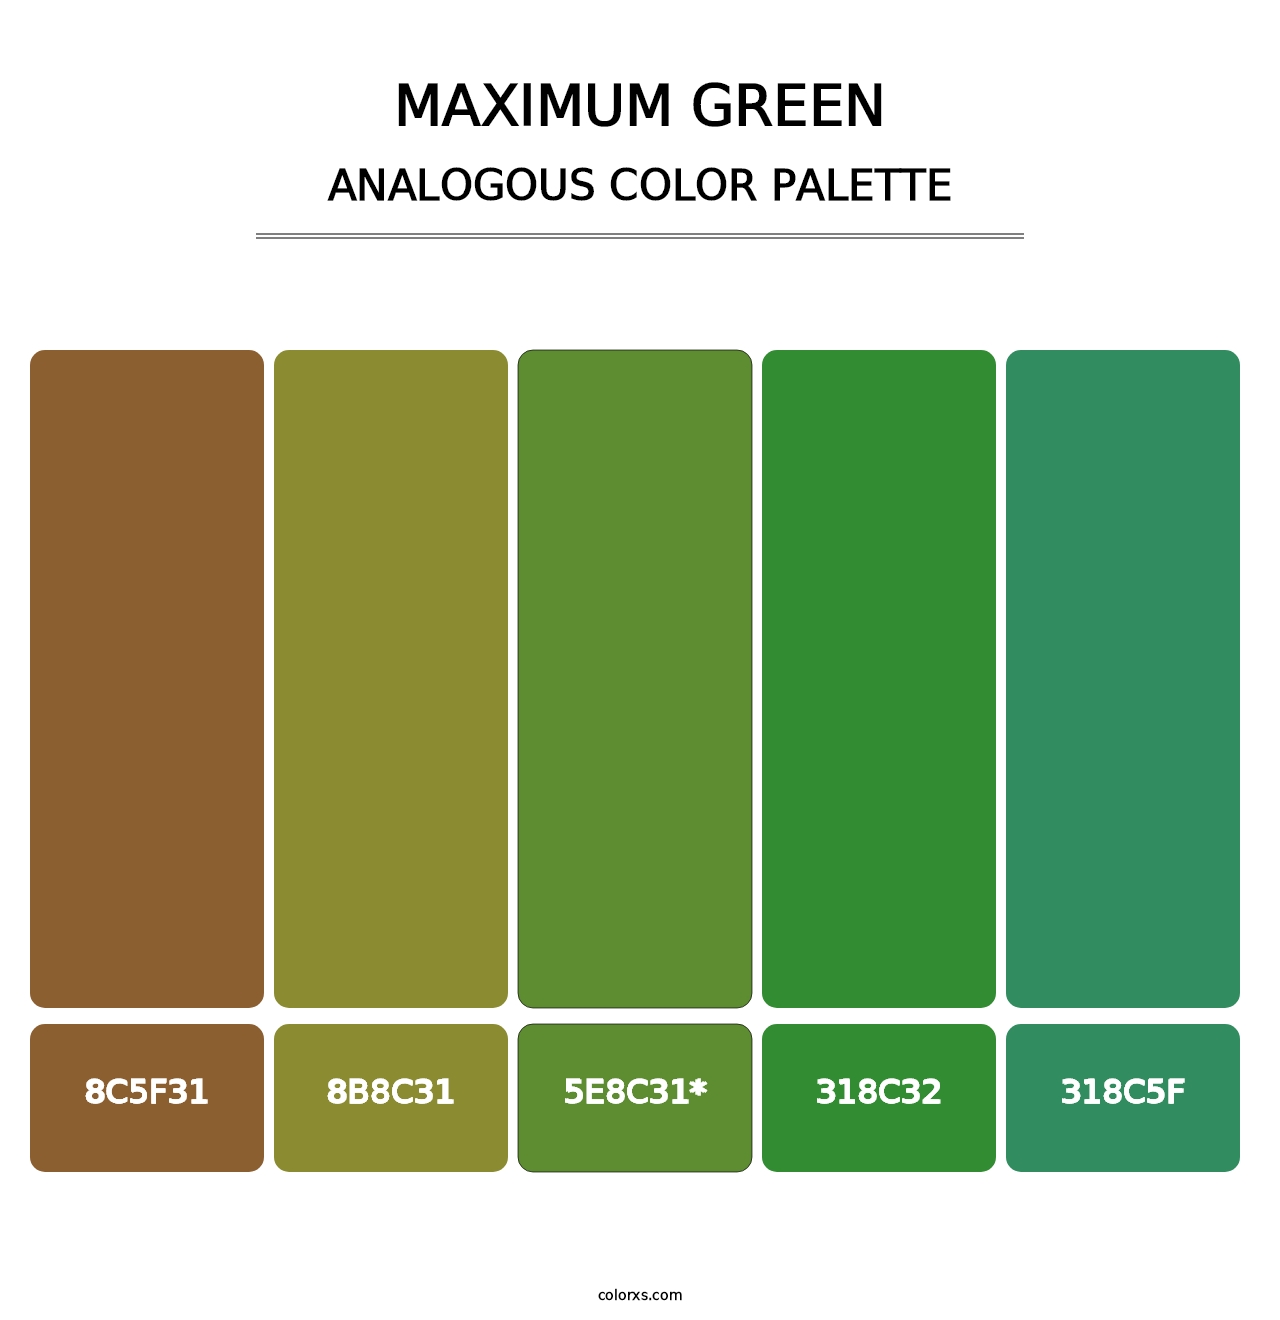 Maximum Green - Analogous Color Palette